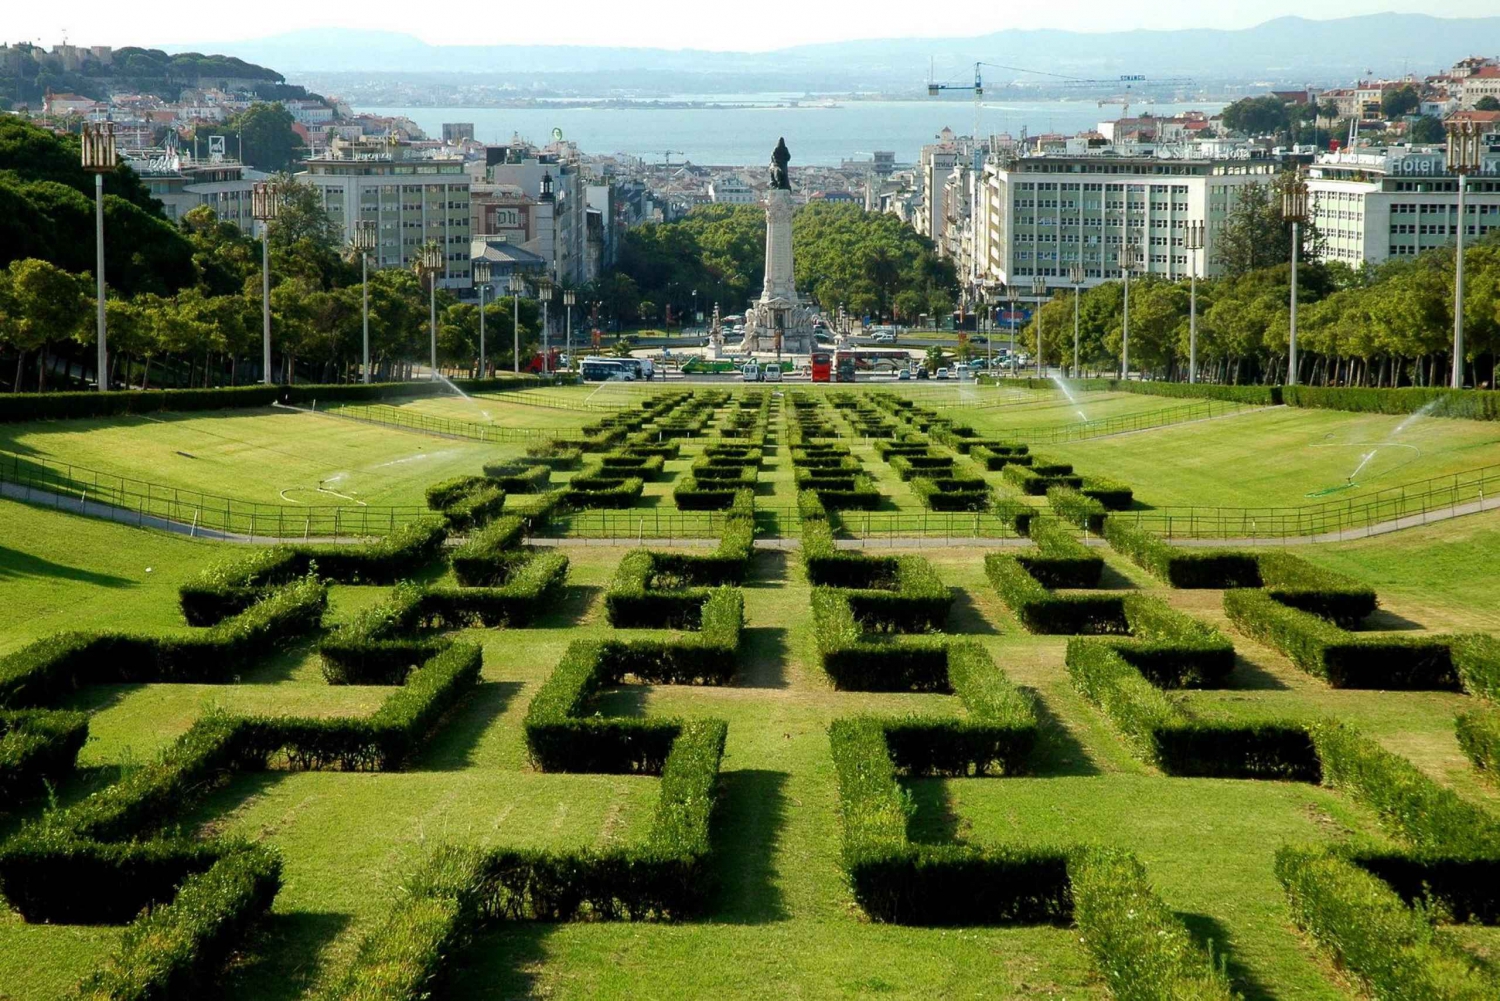 Lisbon: Viewpoints Tuk Tuk Tour